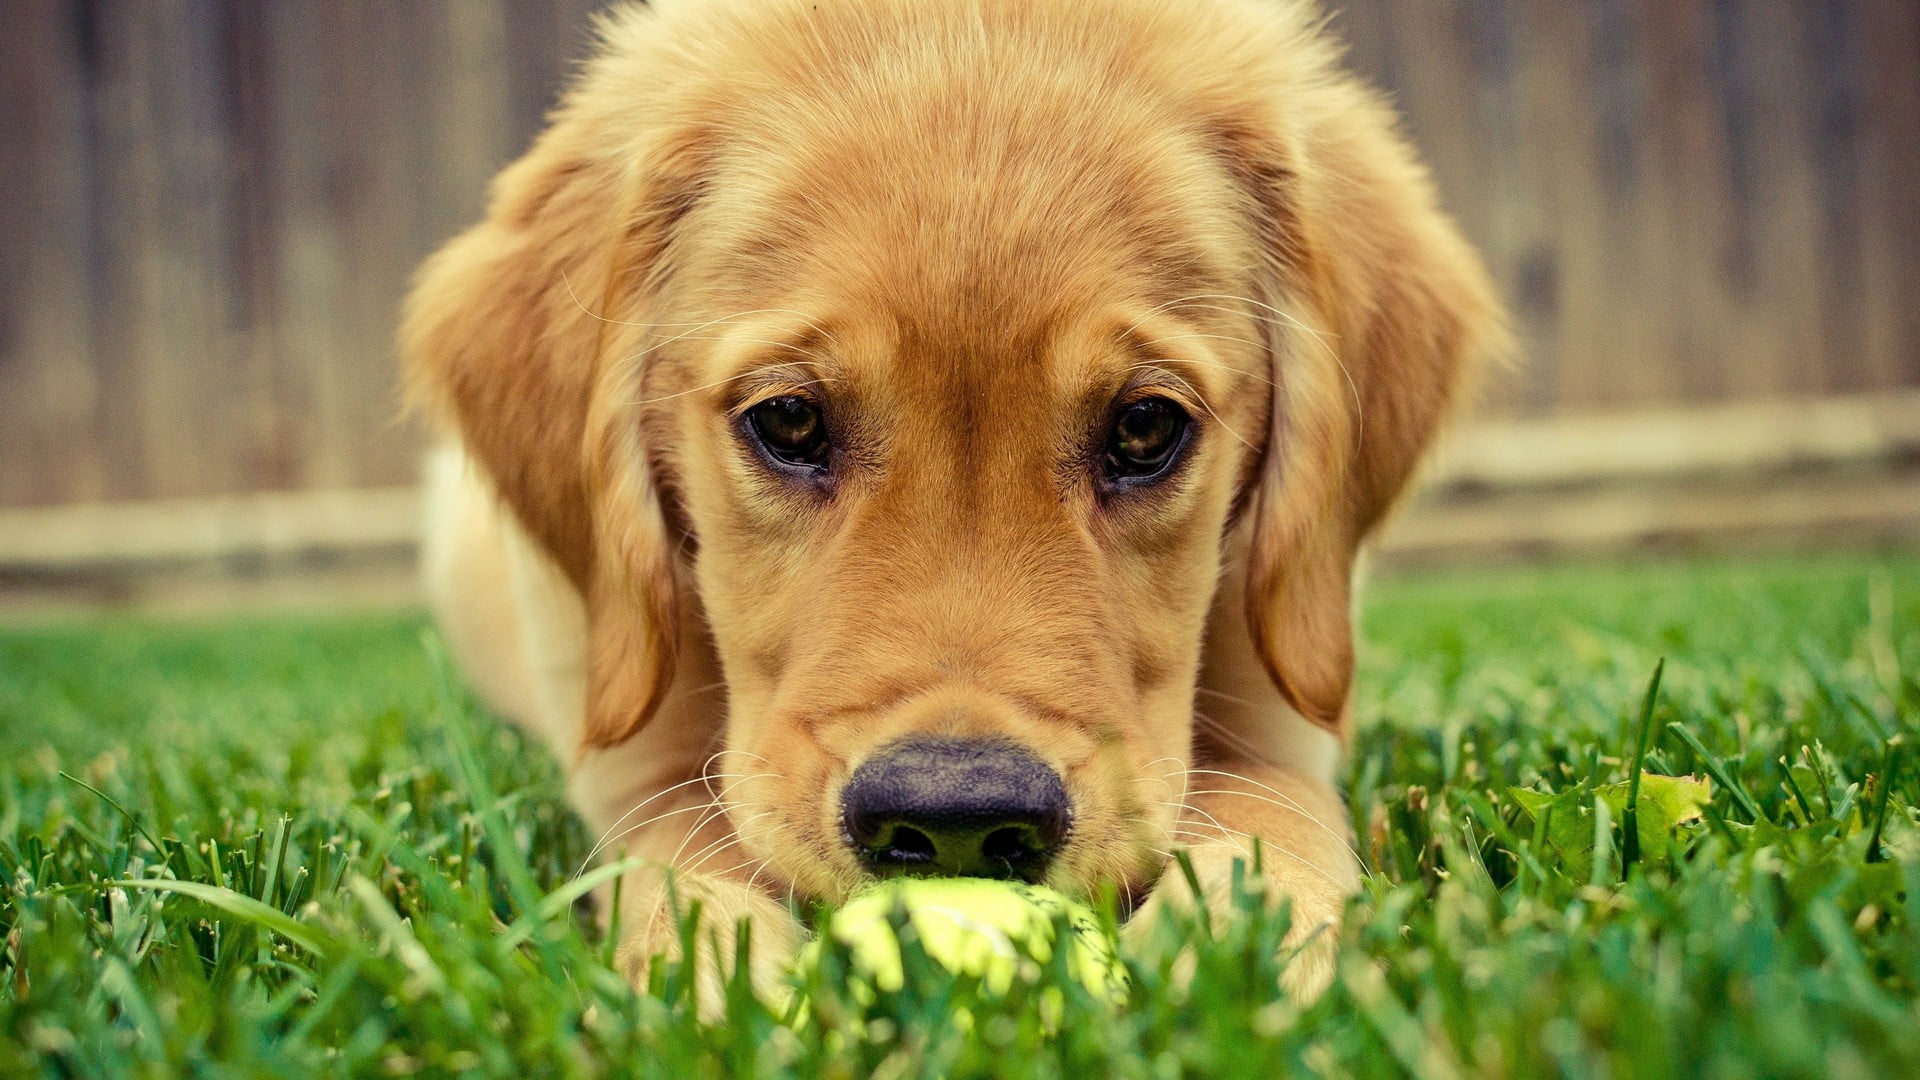 Golden retriever puppy on grass field HD wallpaper ...